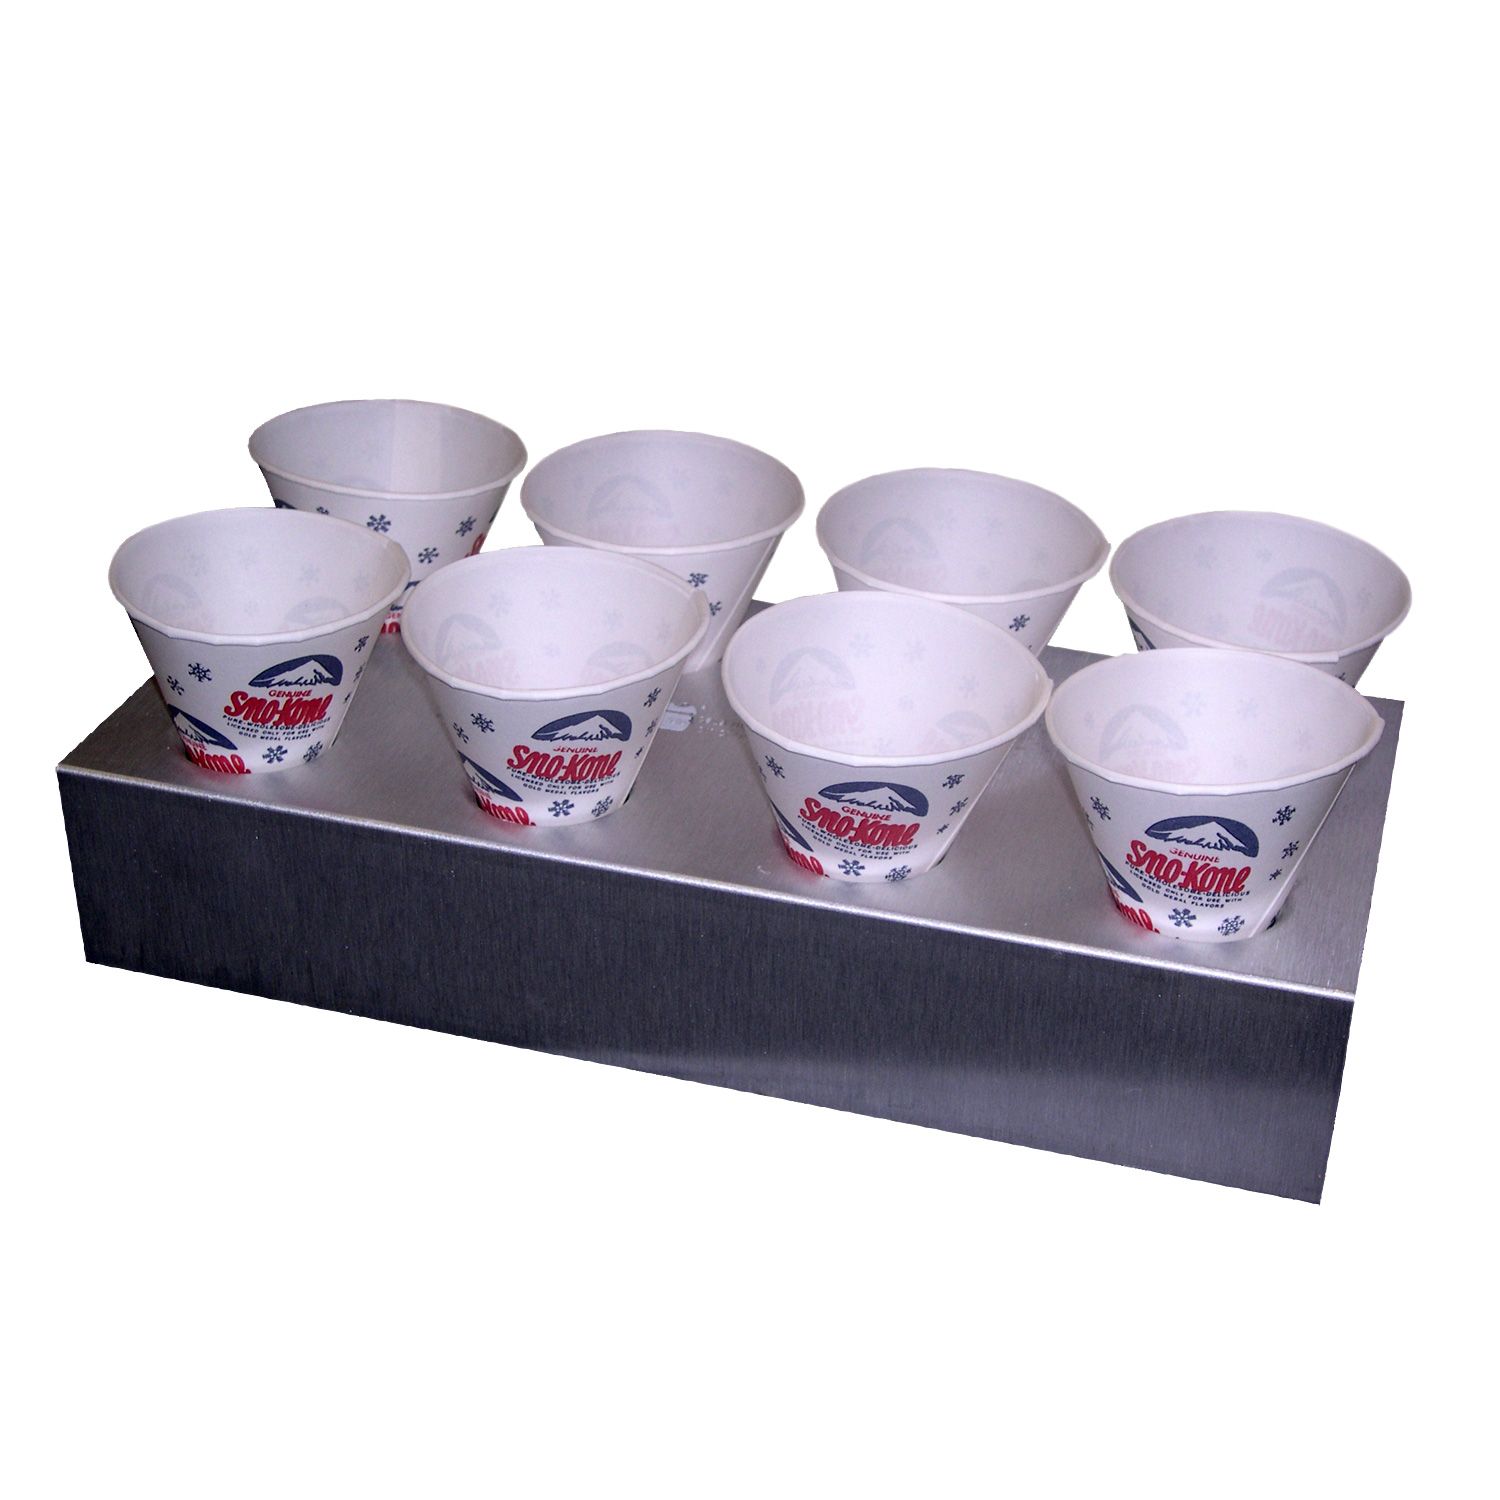 Sno Cone Styrofoam Cups 25ct Rentals